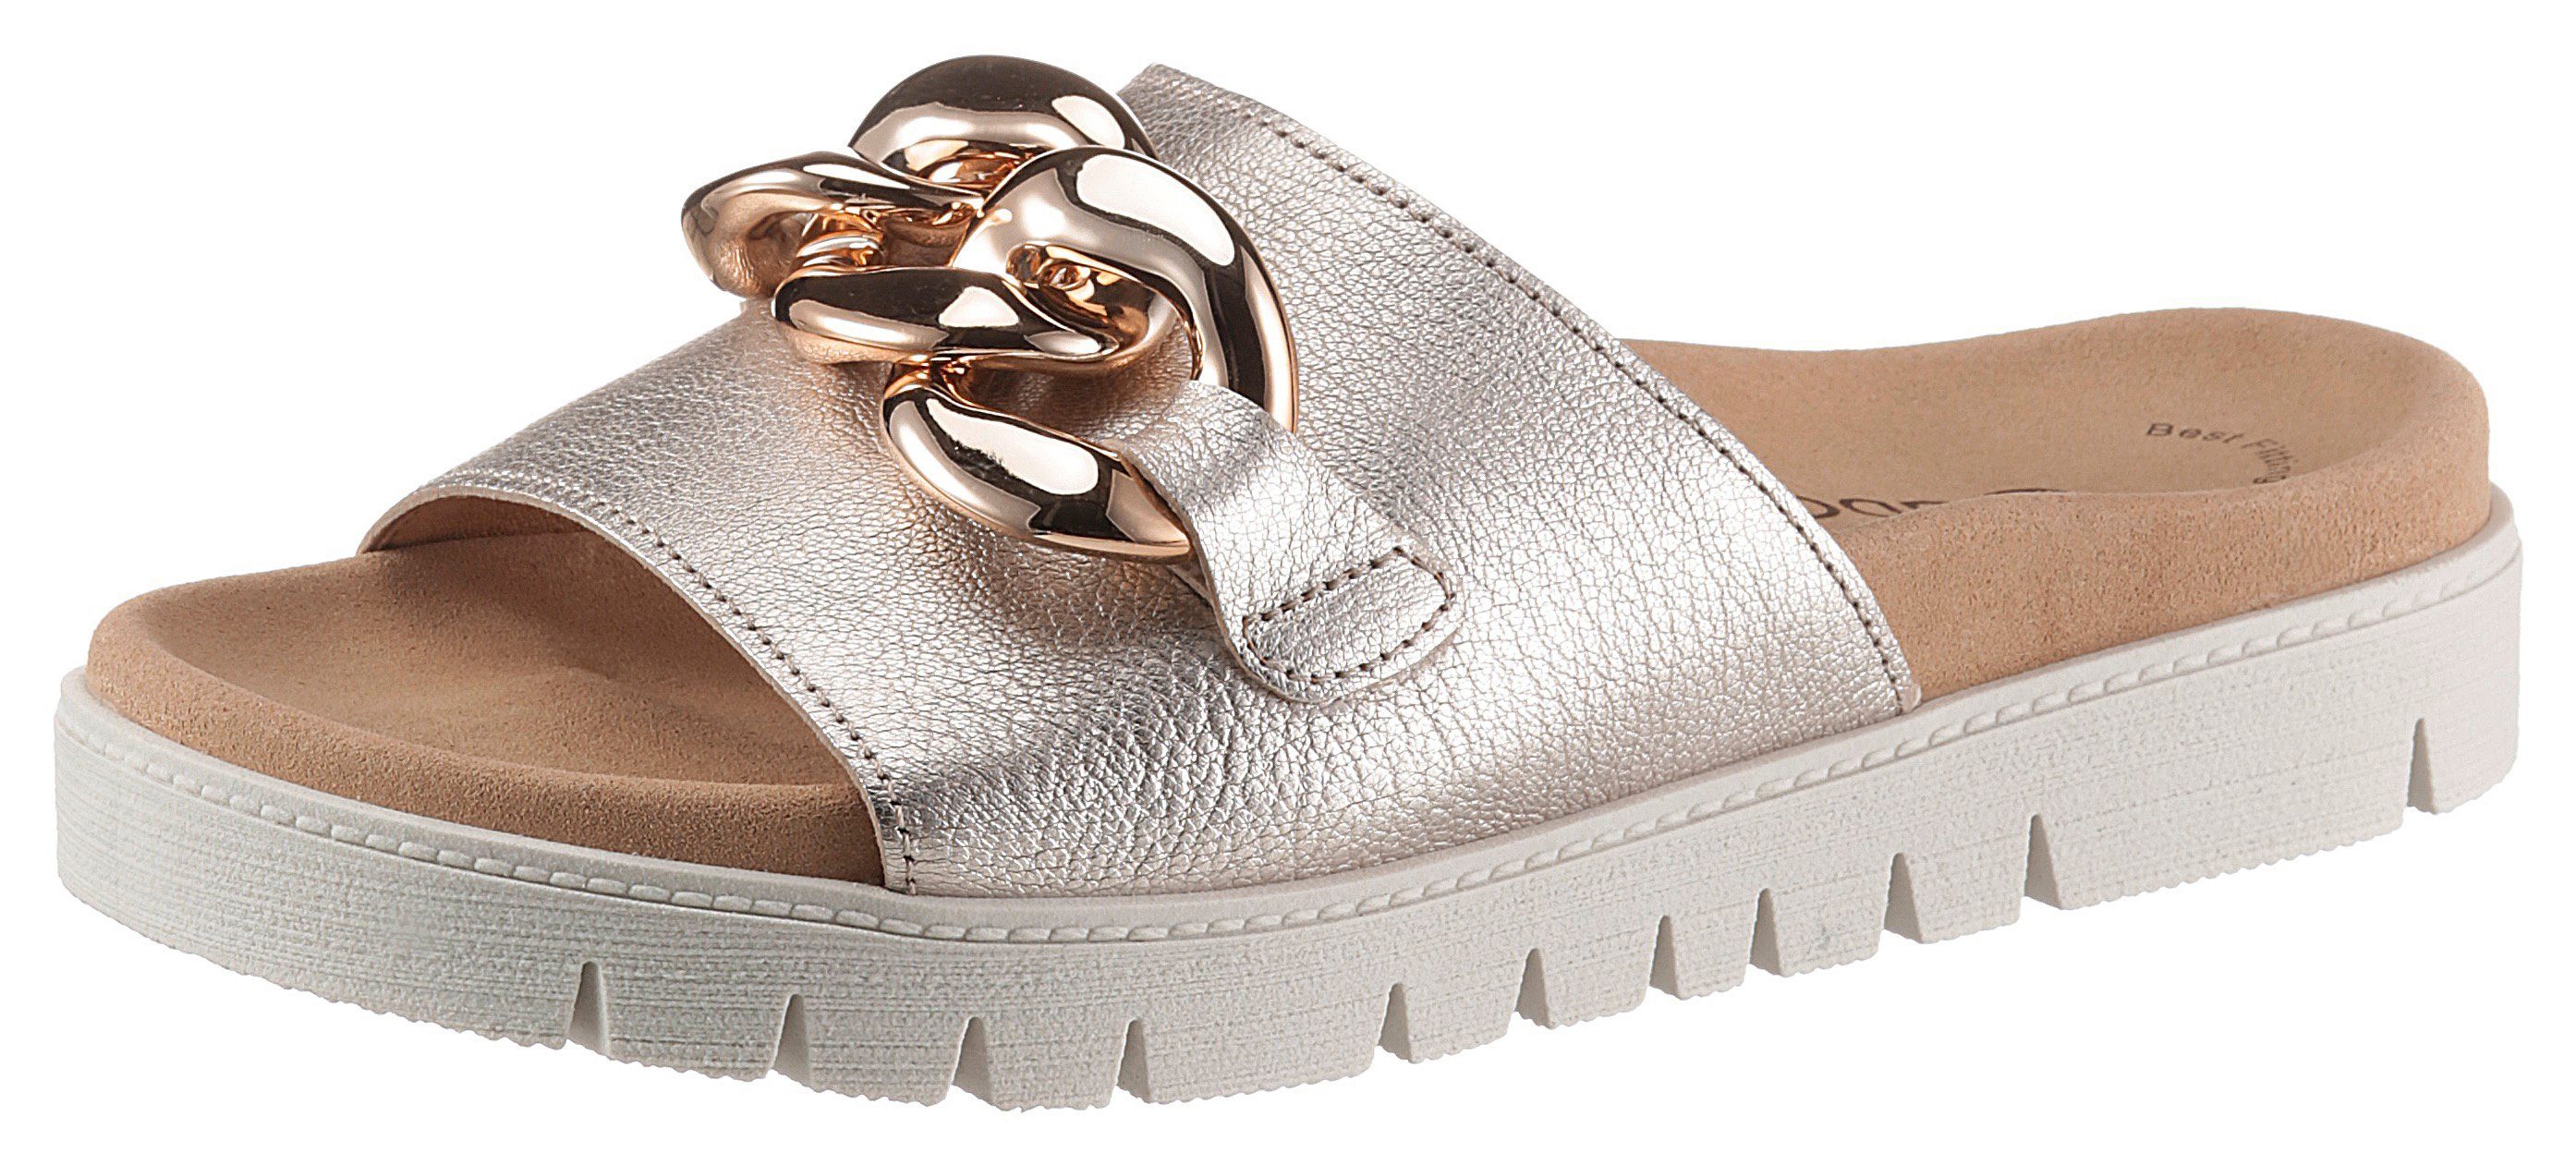 aantrekkelijk Beperking Lelie Gabor Slippers in metallic-look nu online kopen | OTTO